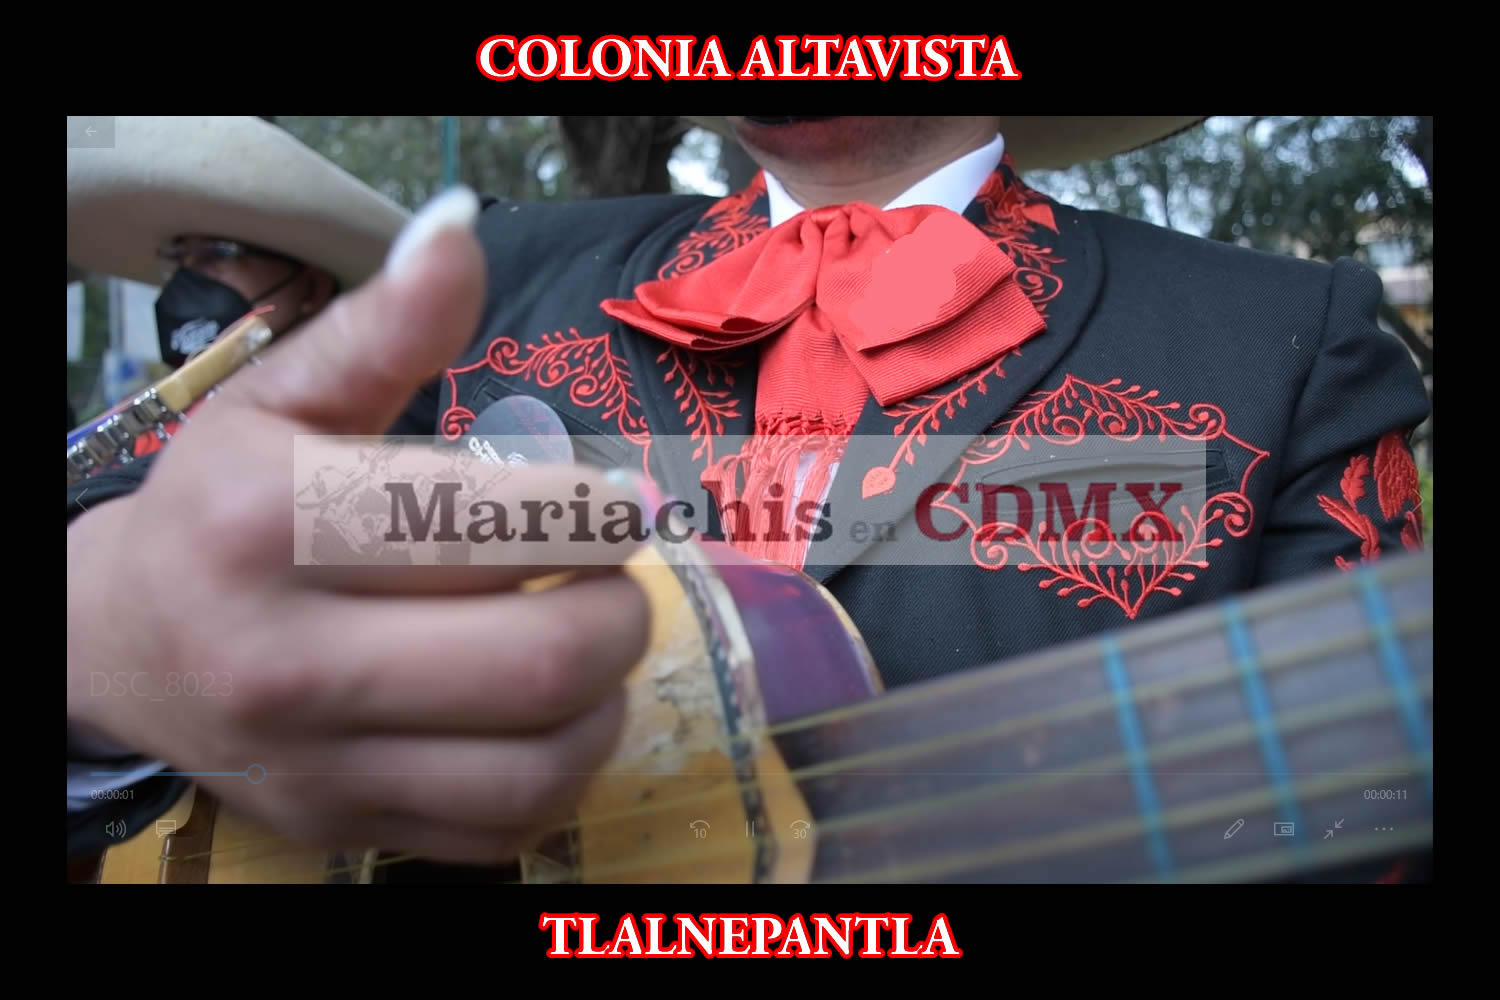 Mariachis en La Colonia Altavista